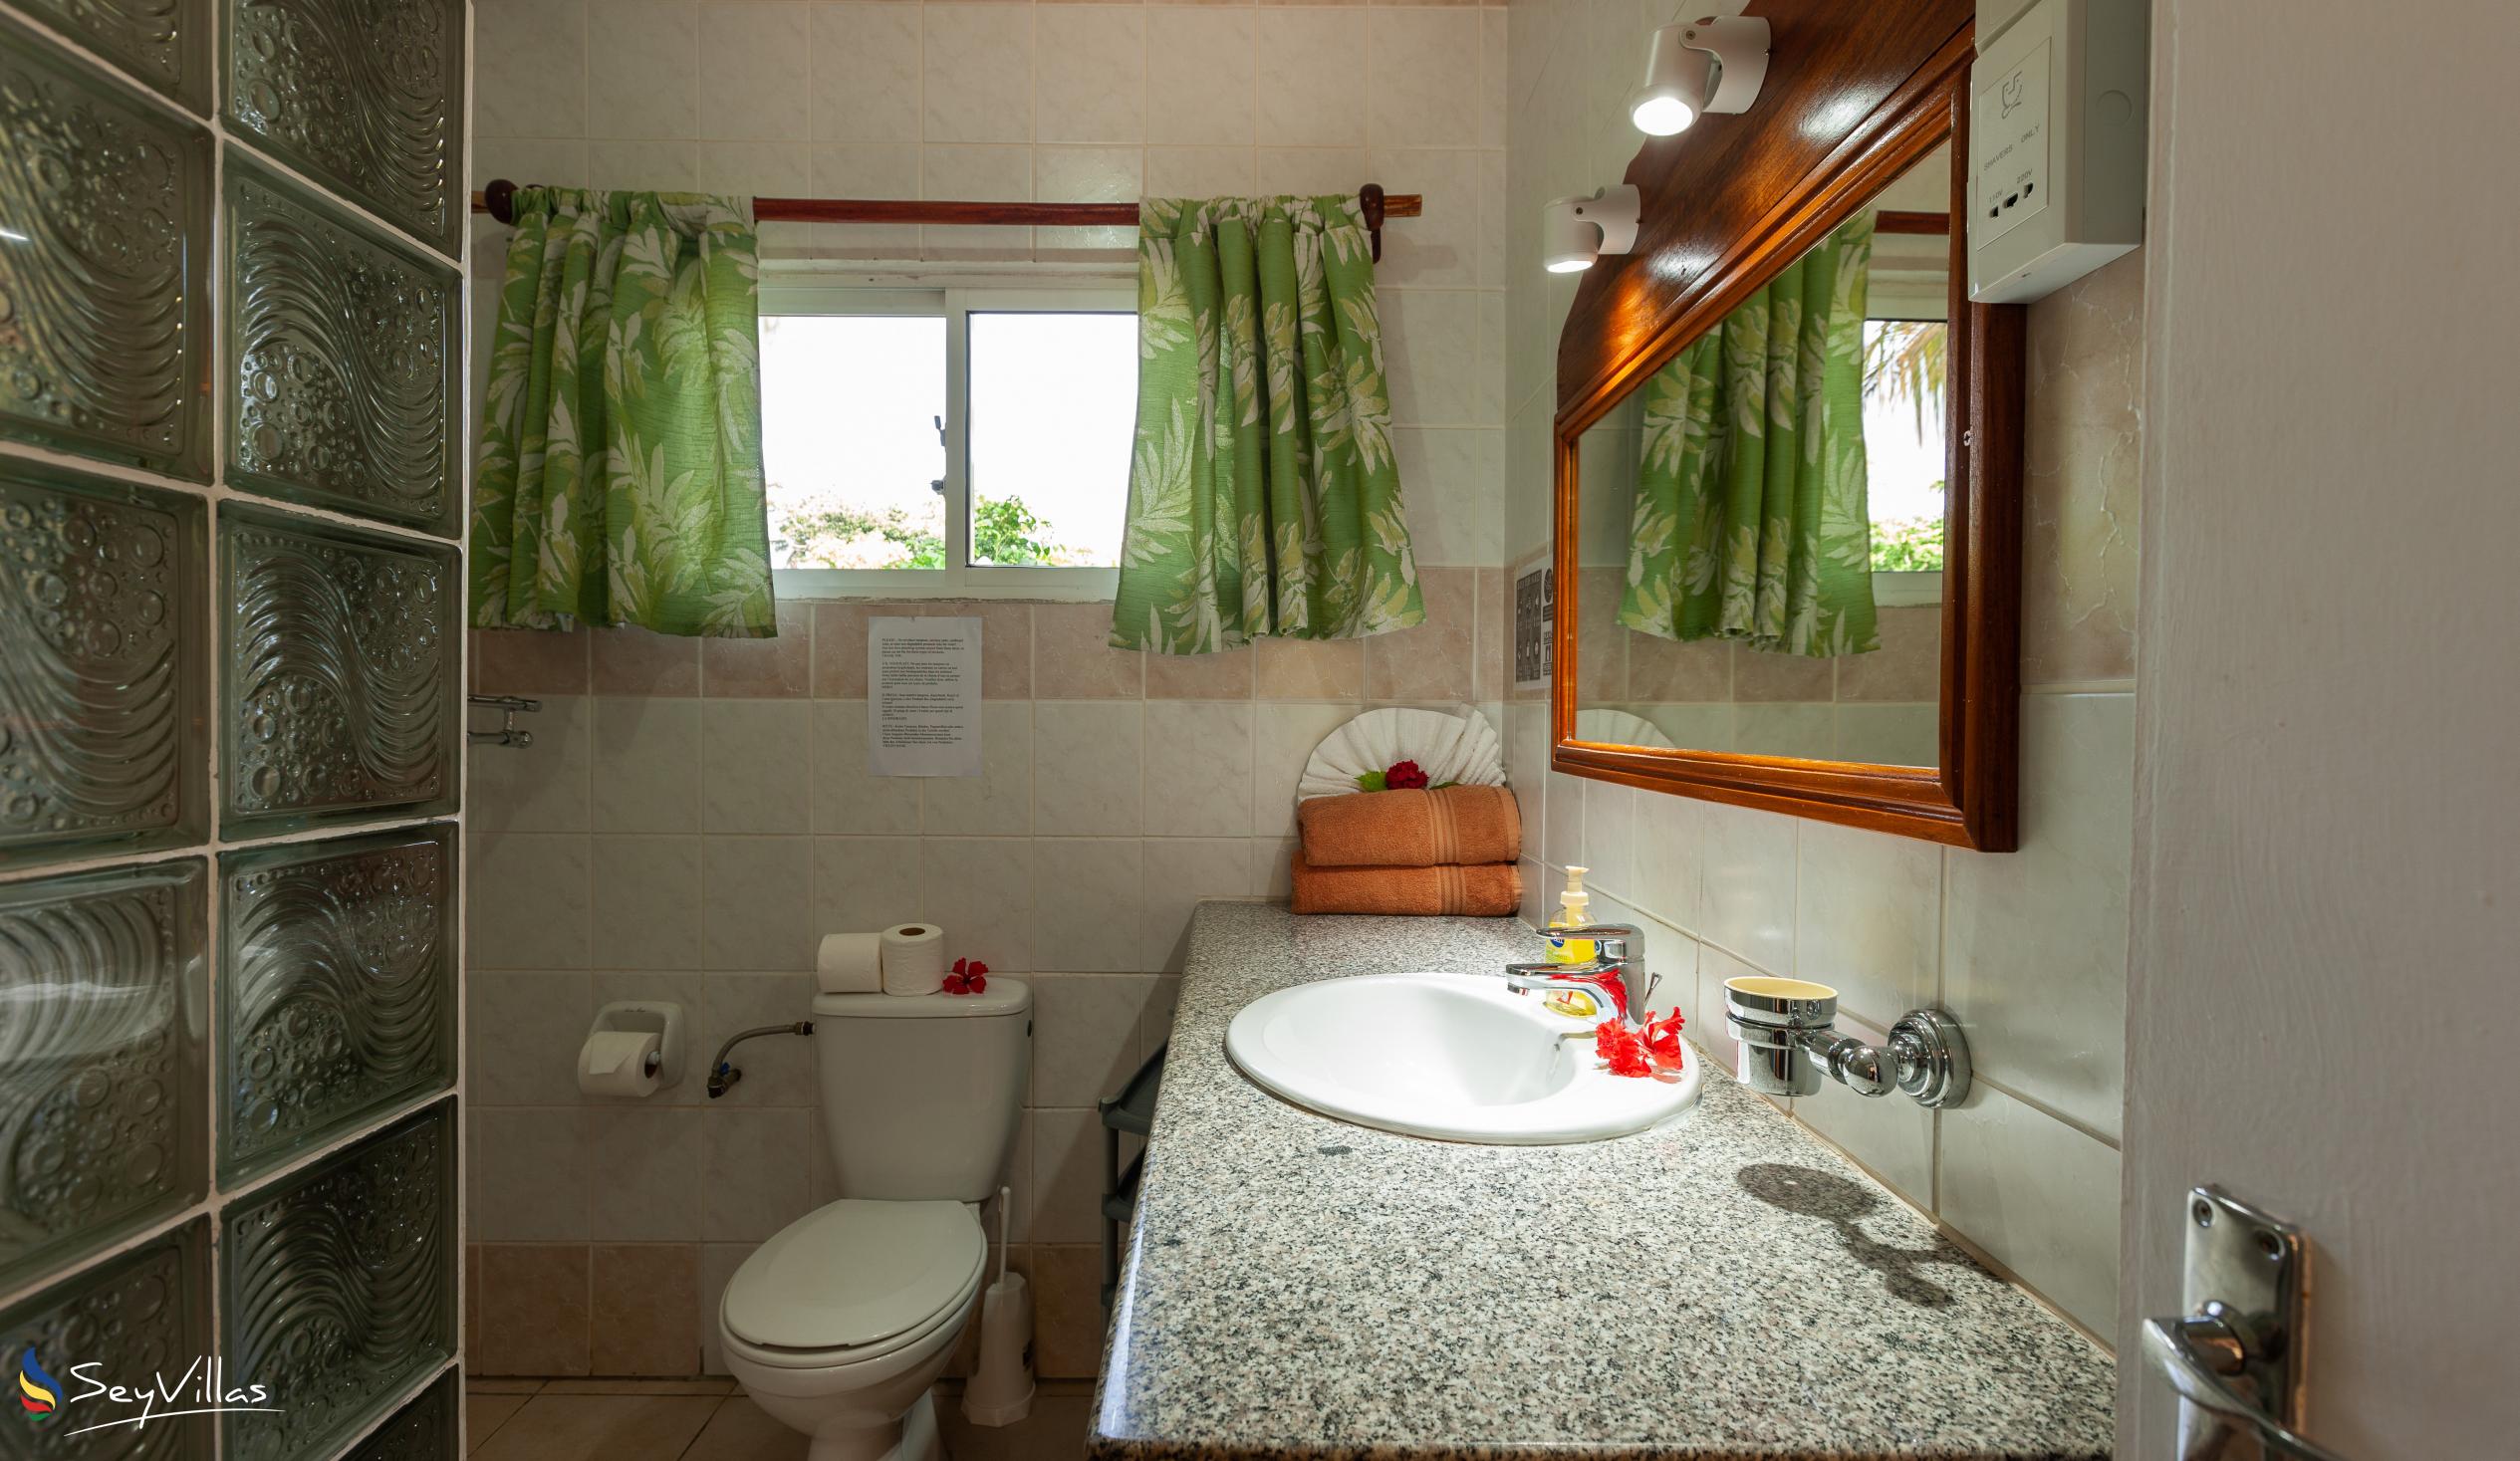 Photo 49: Pension Hibiscus - Maison Alice - Standard Apartment - La Digue (Seychelles)